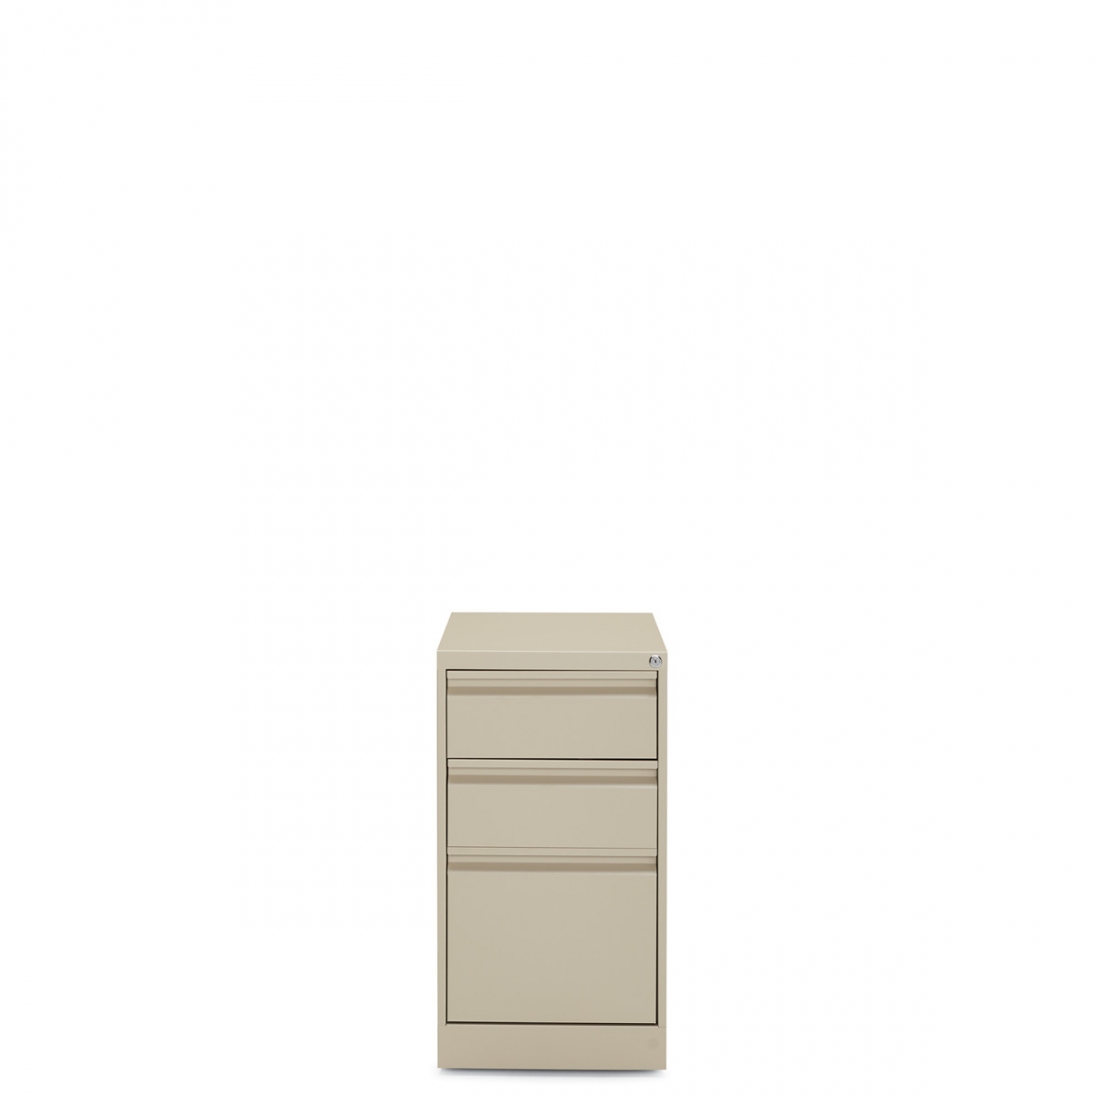 23"D Box/Box/File Mobile Pedestal